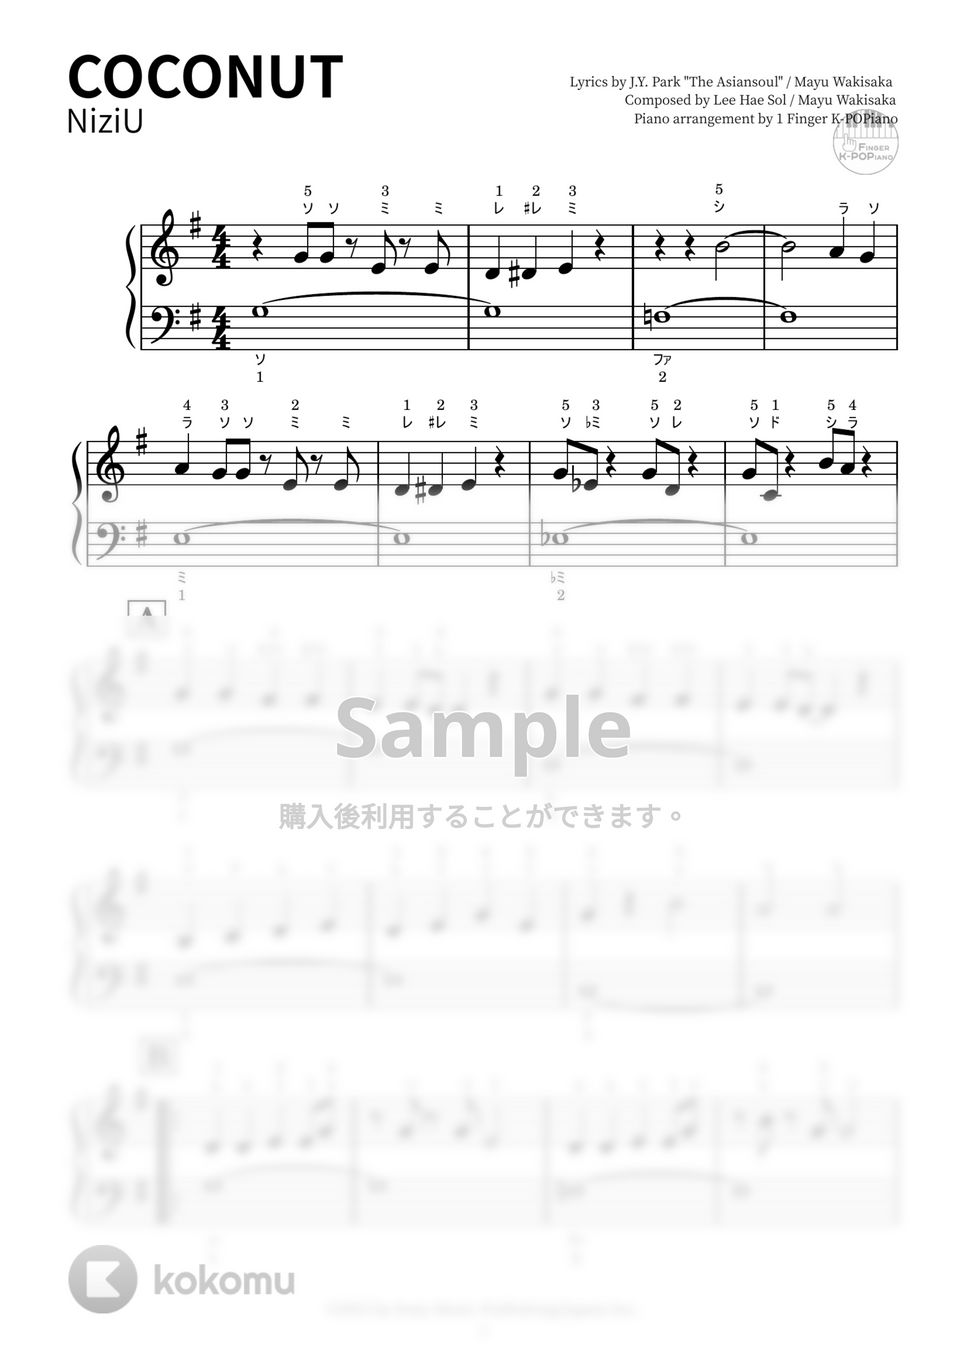 NiziU - COCONUT (ドレミふりがな・指使い付き) by かんたんピアノ ♪ 1 Finger K-POPiano